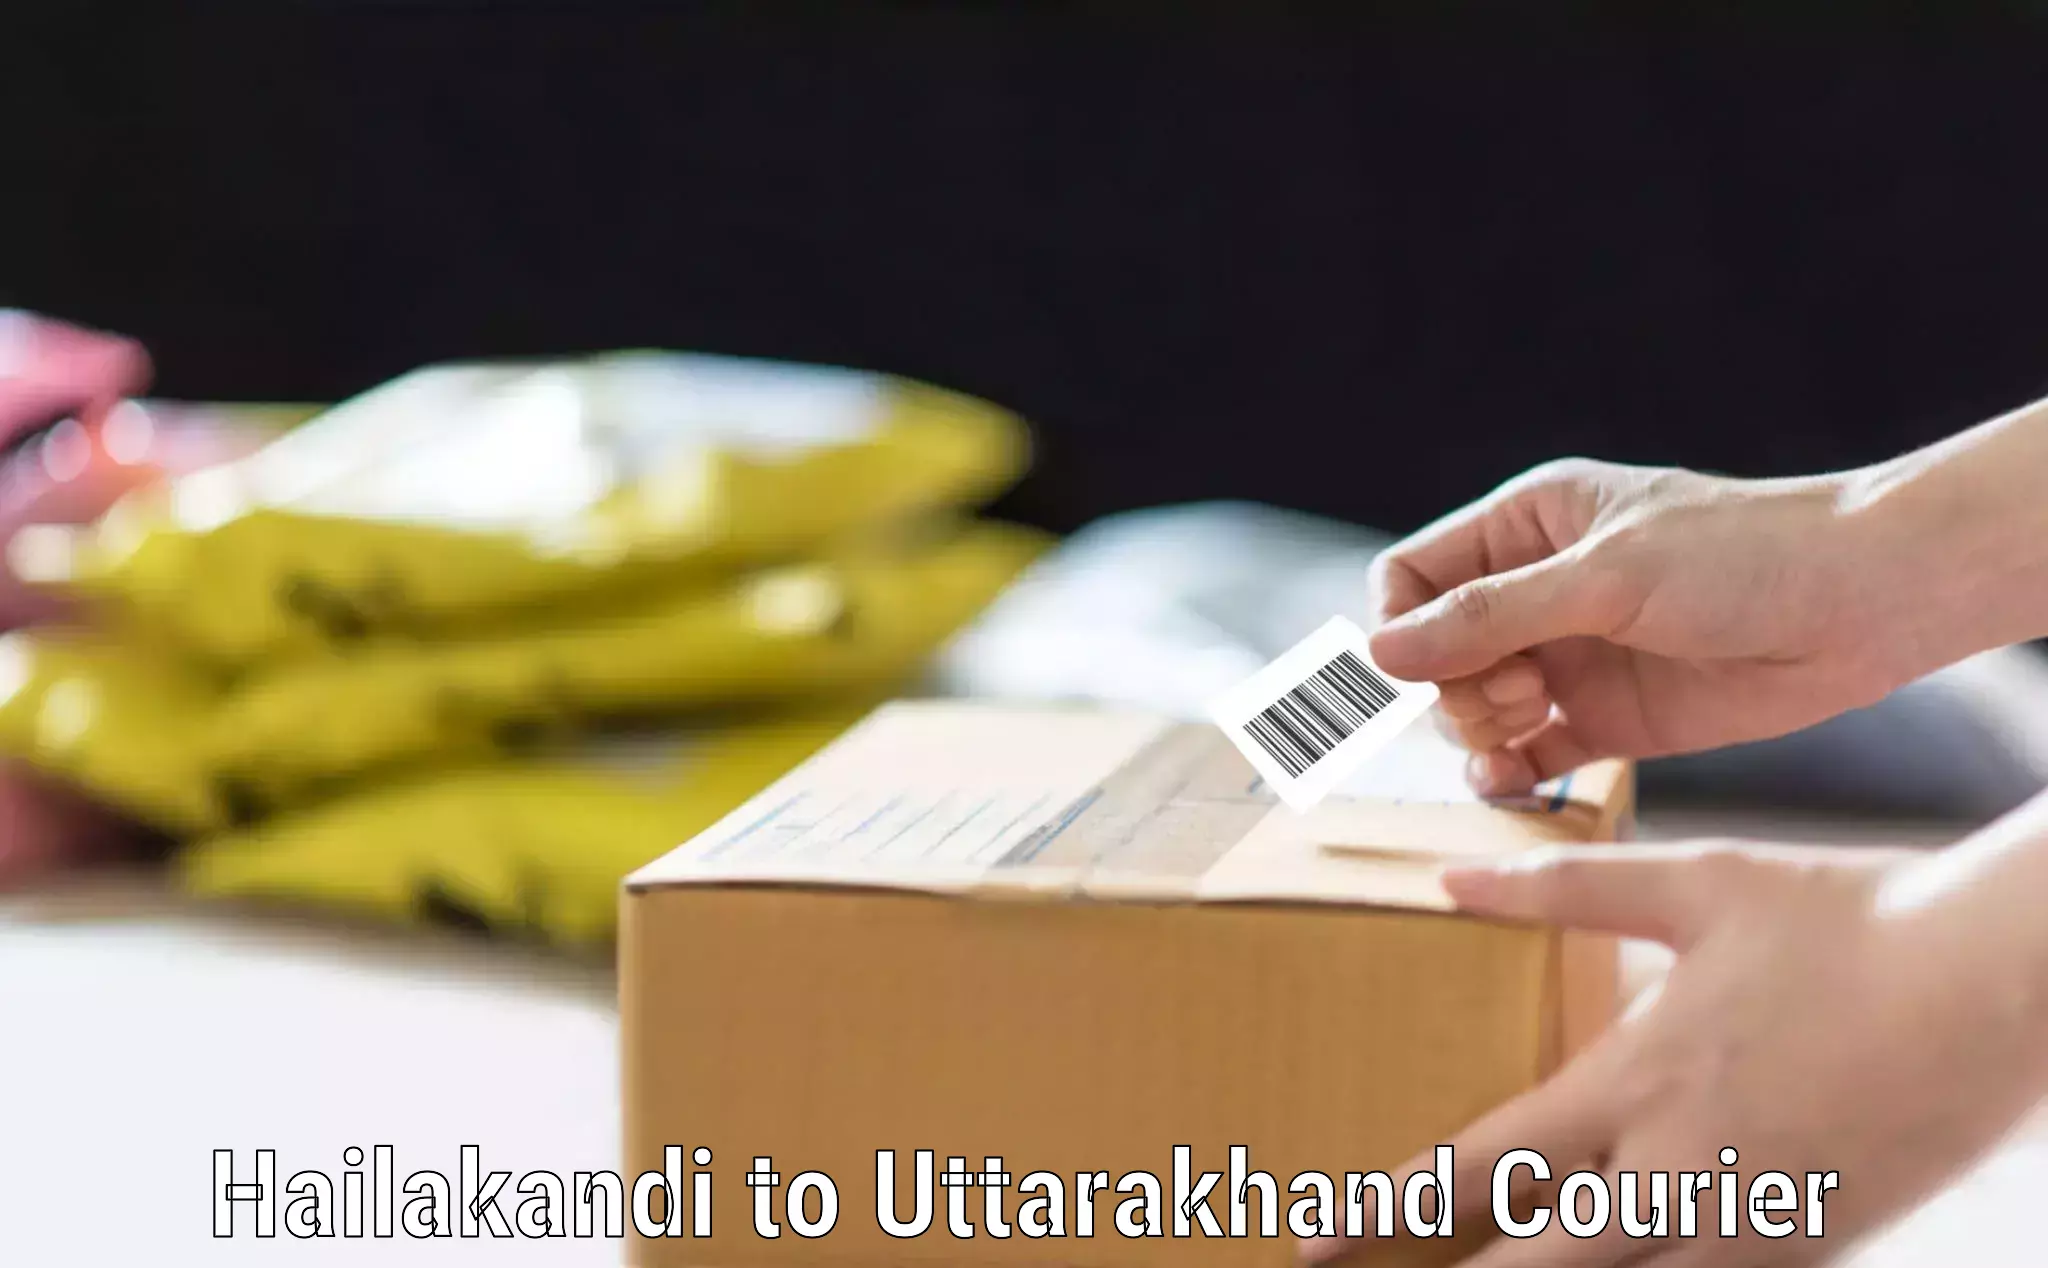 Emergency baggage service Hailakandi to Uttarakhand